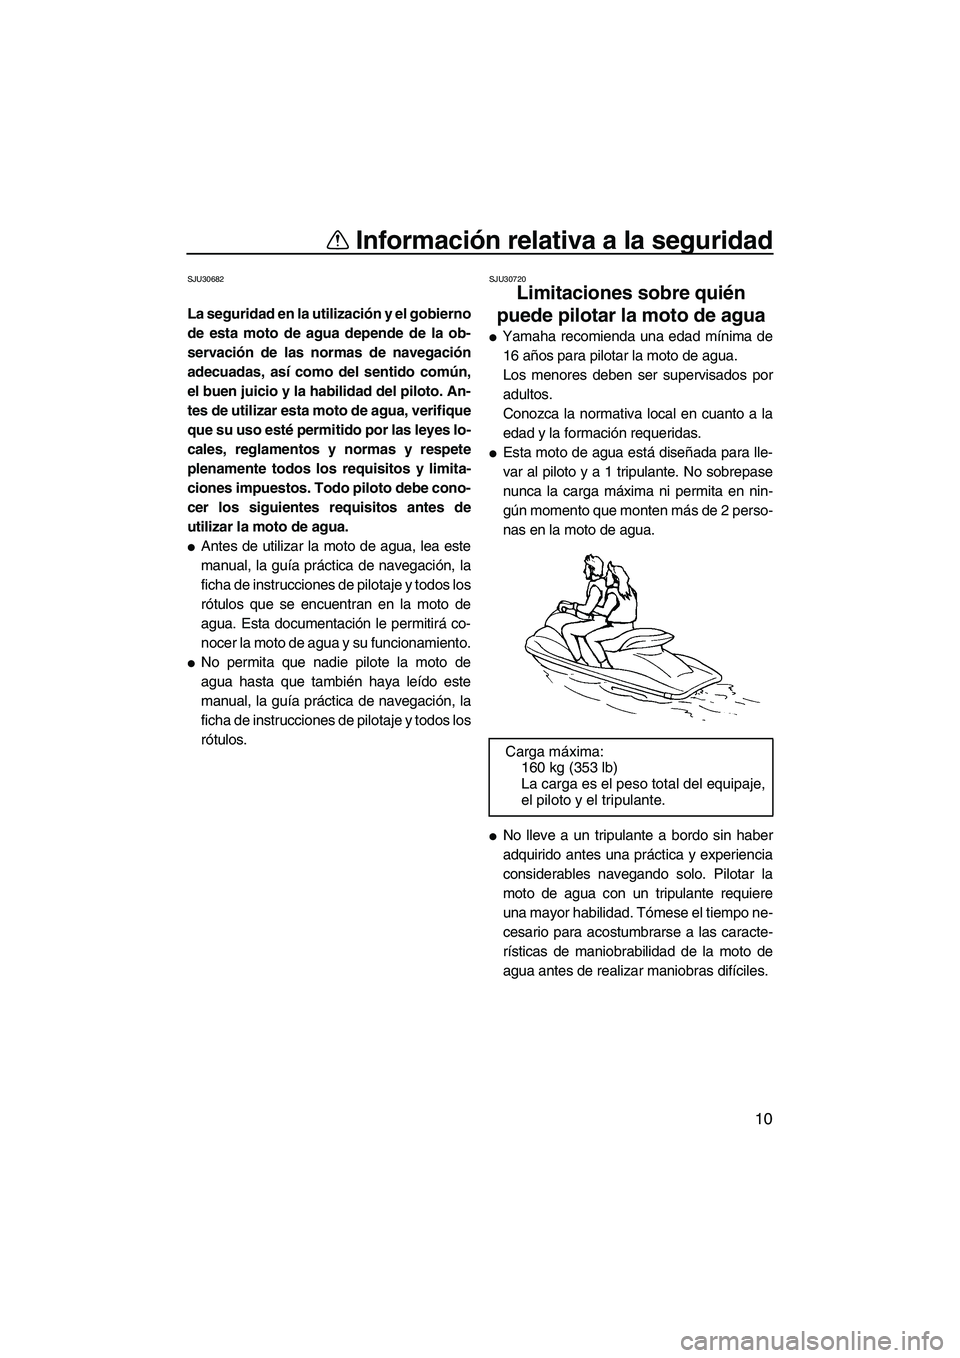 YAMAHA FZR 2009  Manuale de Empleo (in Spanish) Información relativa a la seguridad
10
SJU30682
La seguridad en la utilización y el gobierno
de esta moto de agua depende de la ob-
servación de las normas de navegación
adecuadas, así como del s